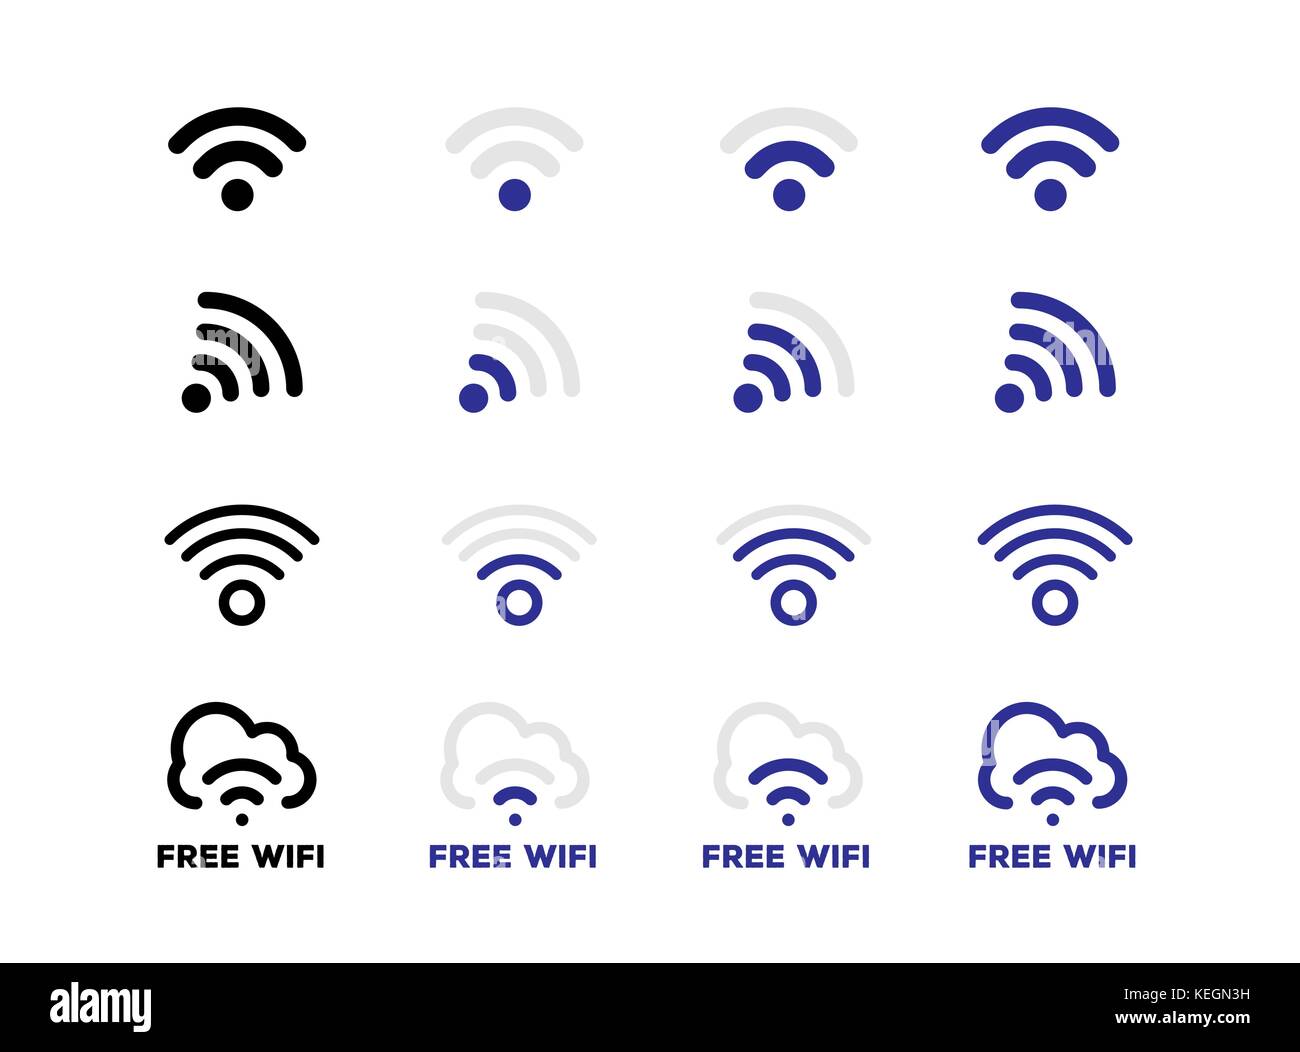 Rete internet connessione wifi gratuita di set di icone in formato vettoriale Illustrazione Vettoriale